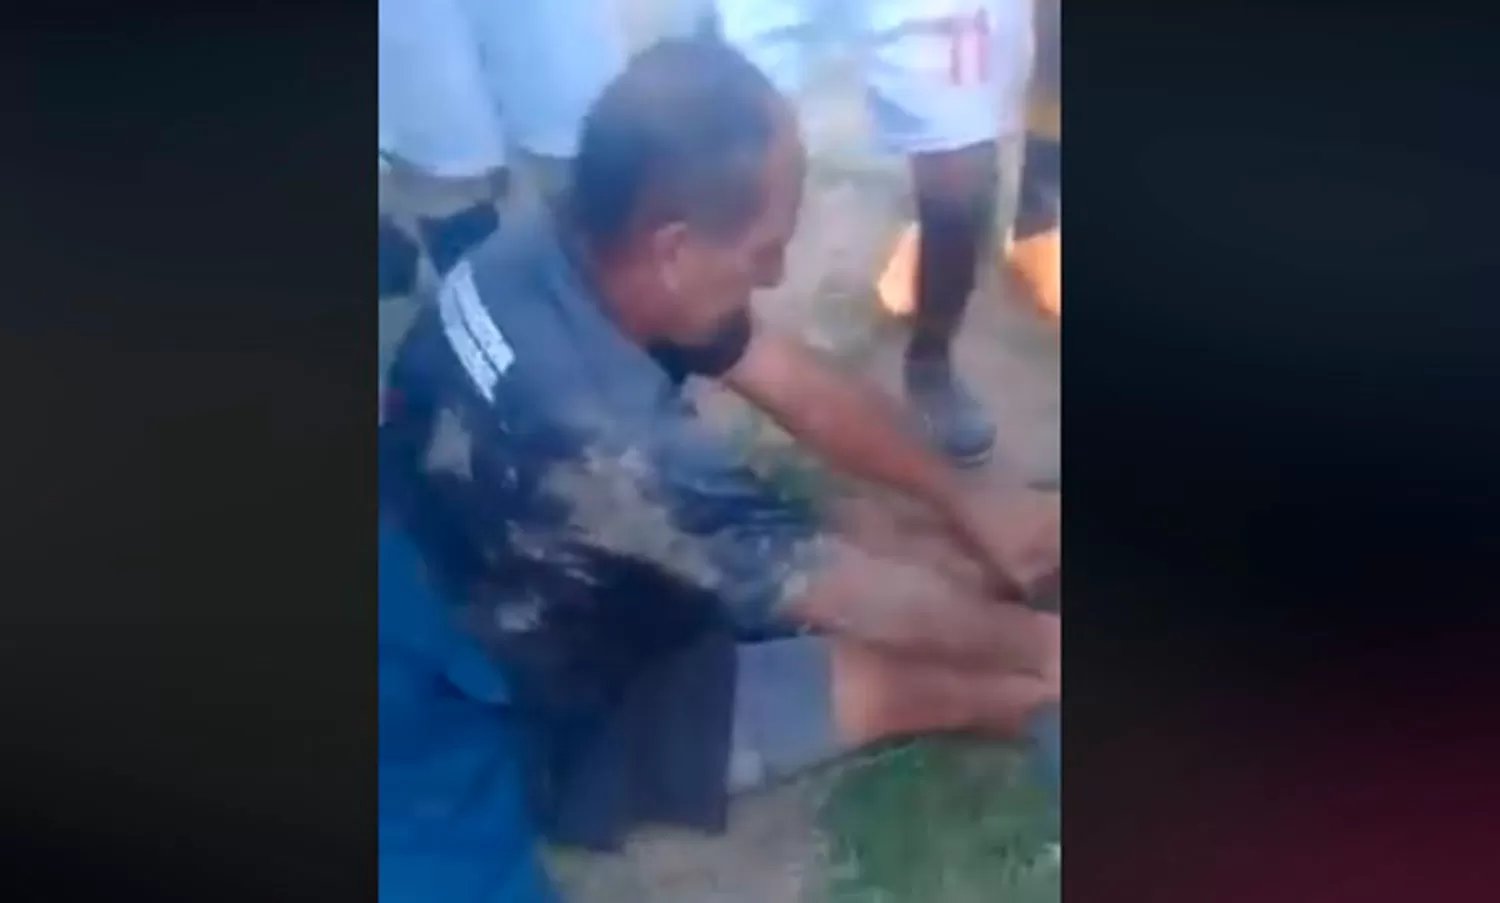 ASÍ LO DEJARON. El árbitro del encuentro fue atacado por los fanáticos locales en Tafí del Valle.